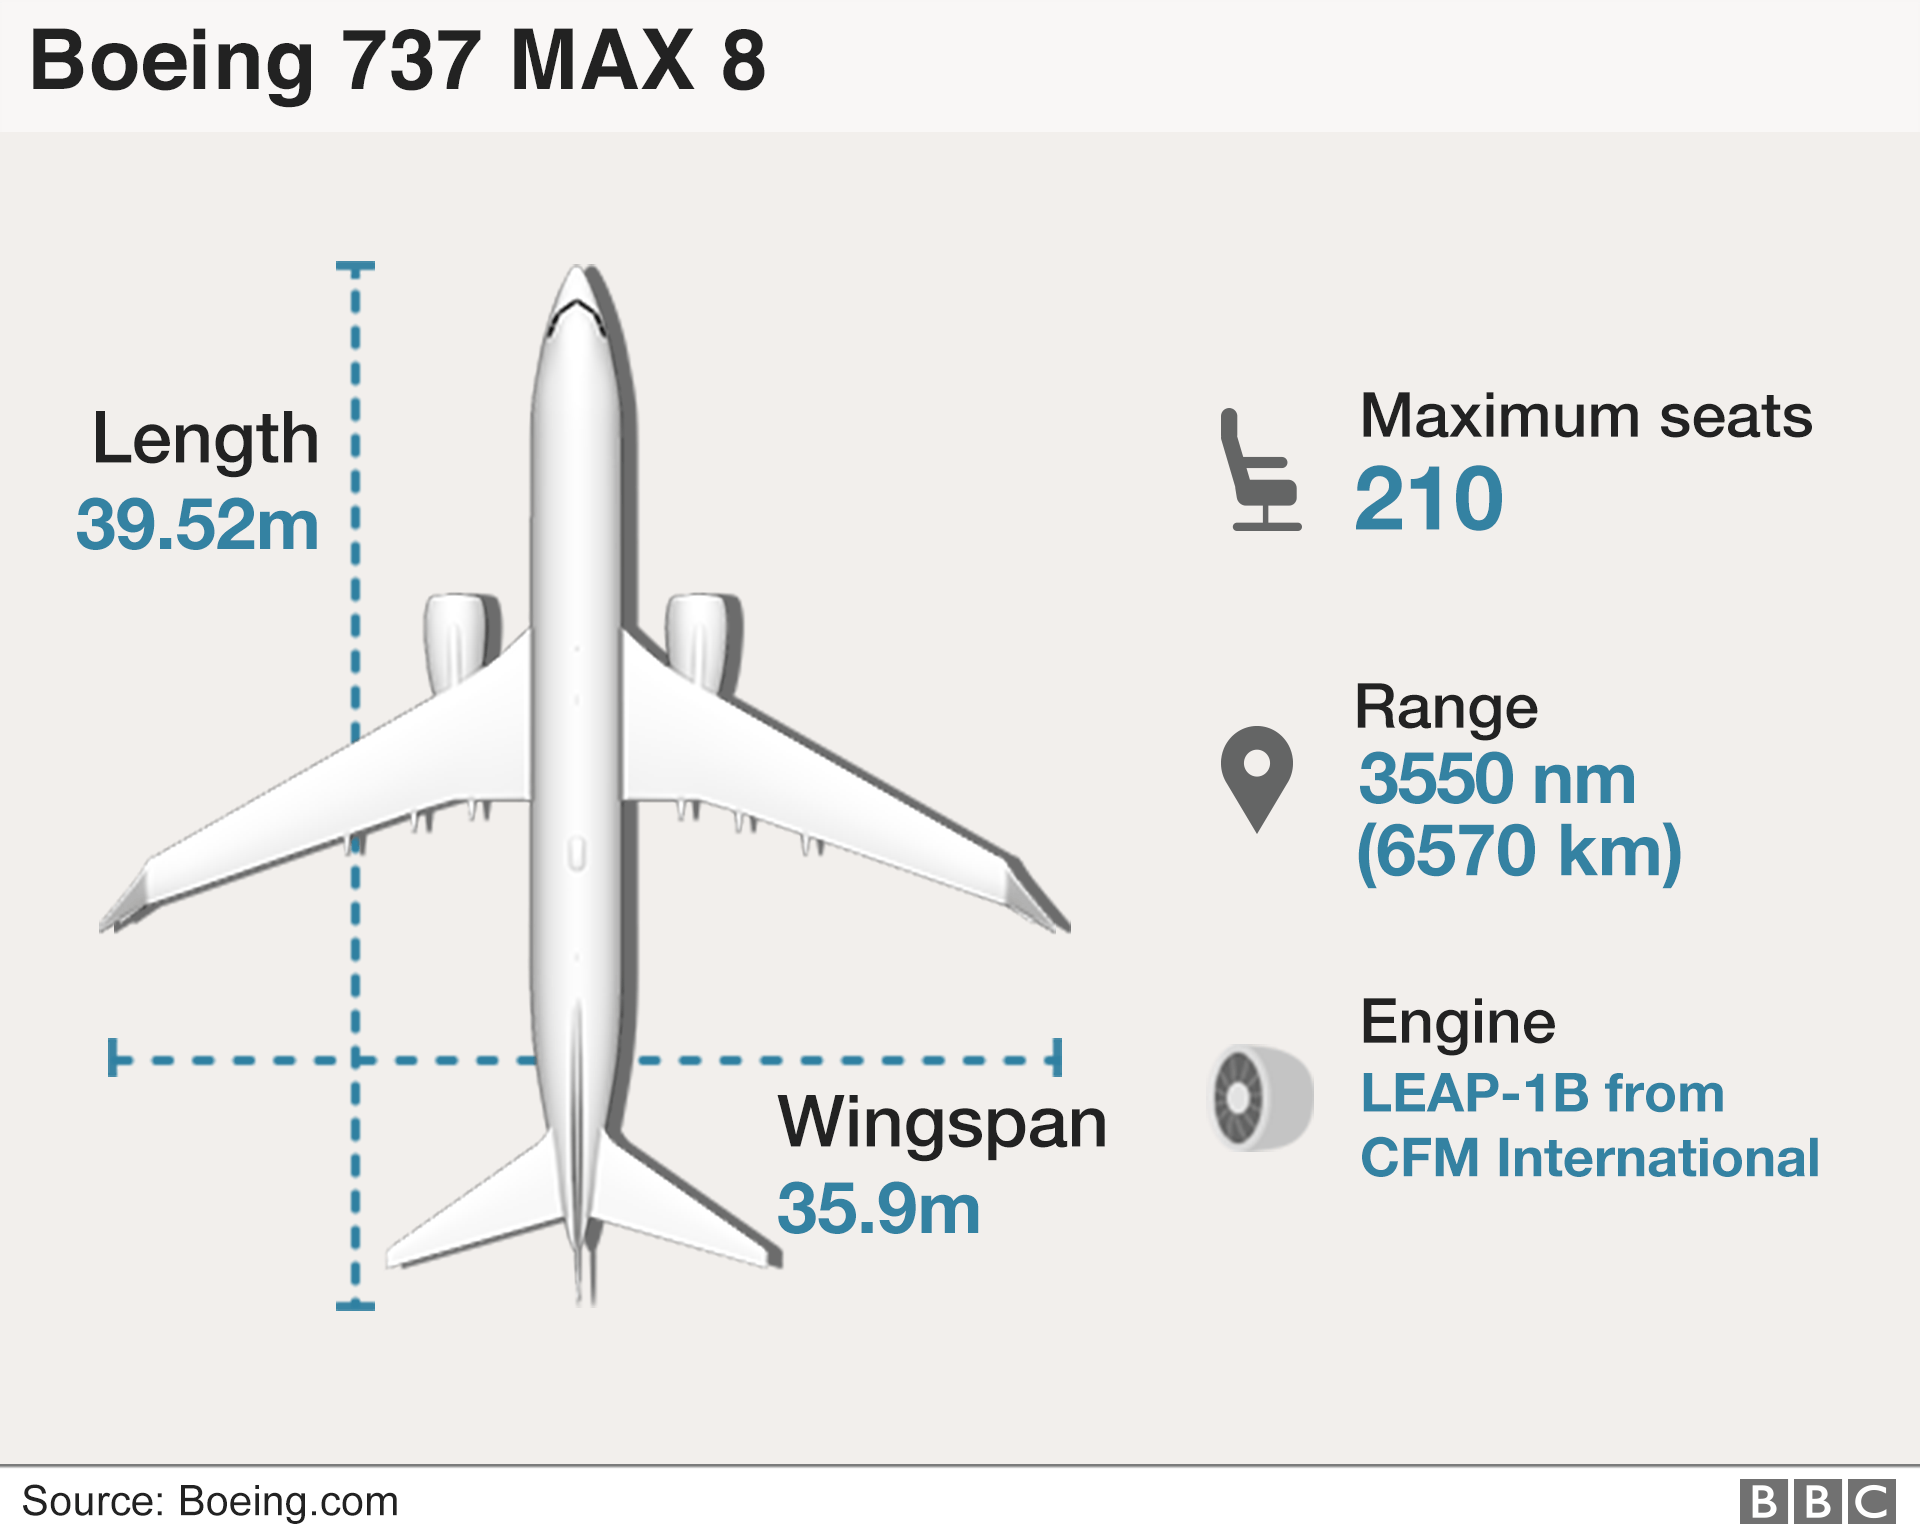 Графическое изображение самолета Boeing 737 Max 8